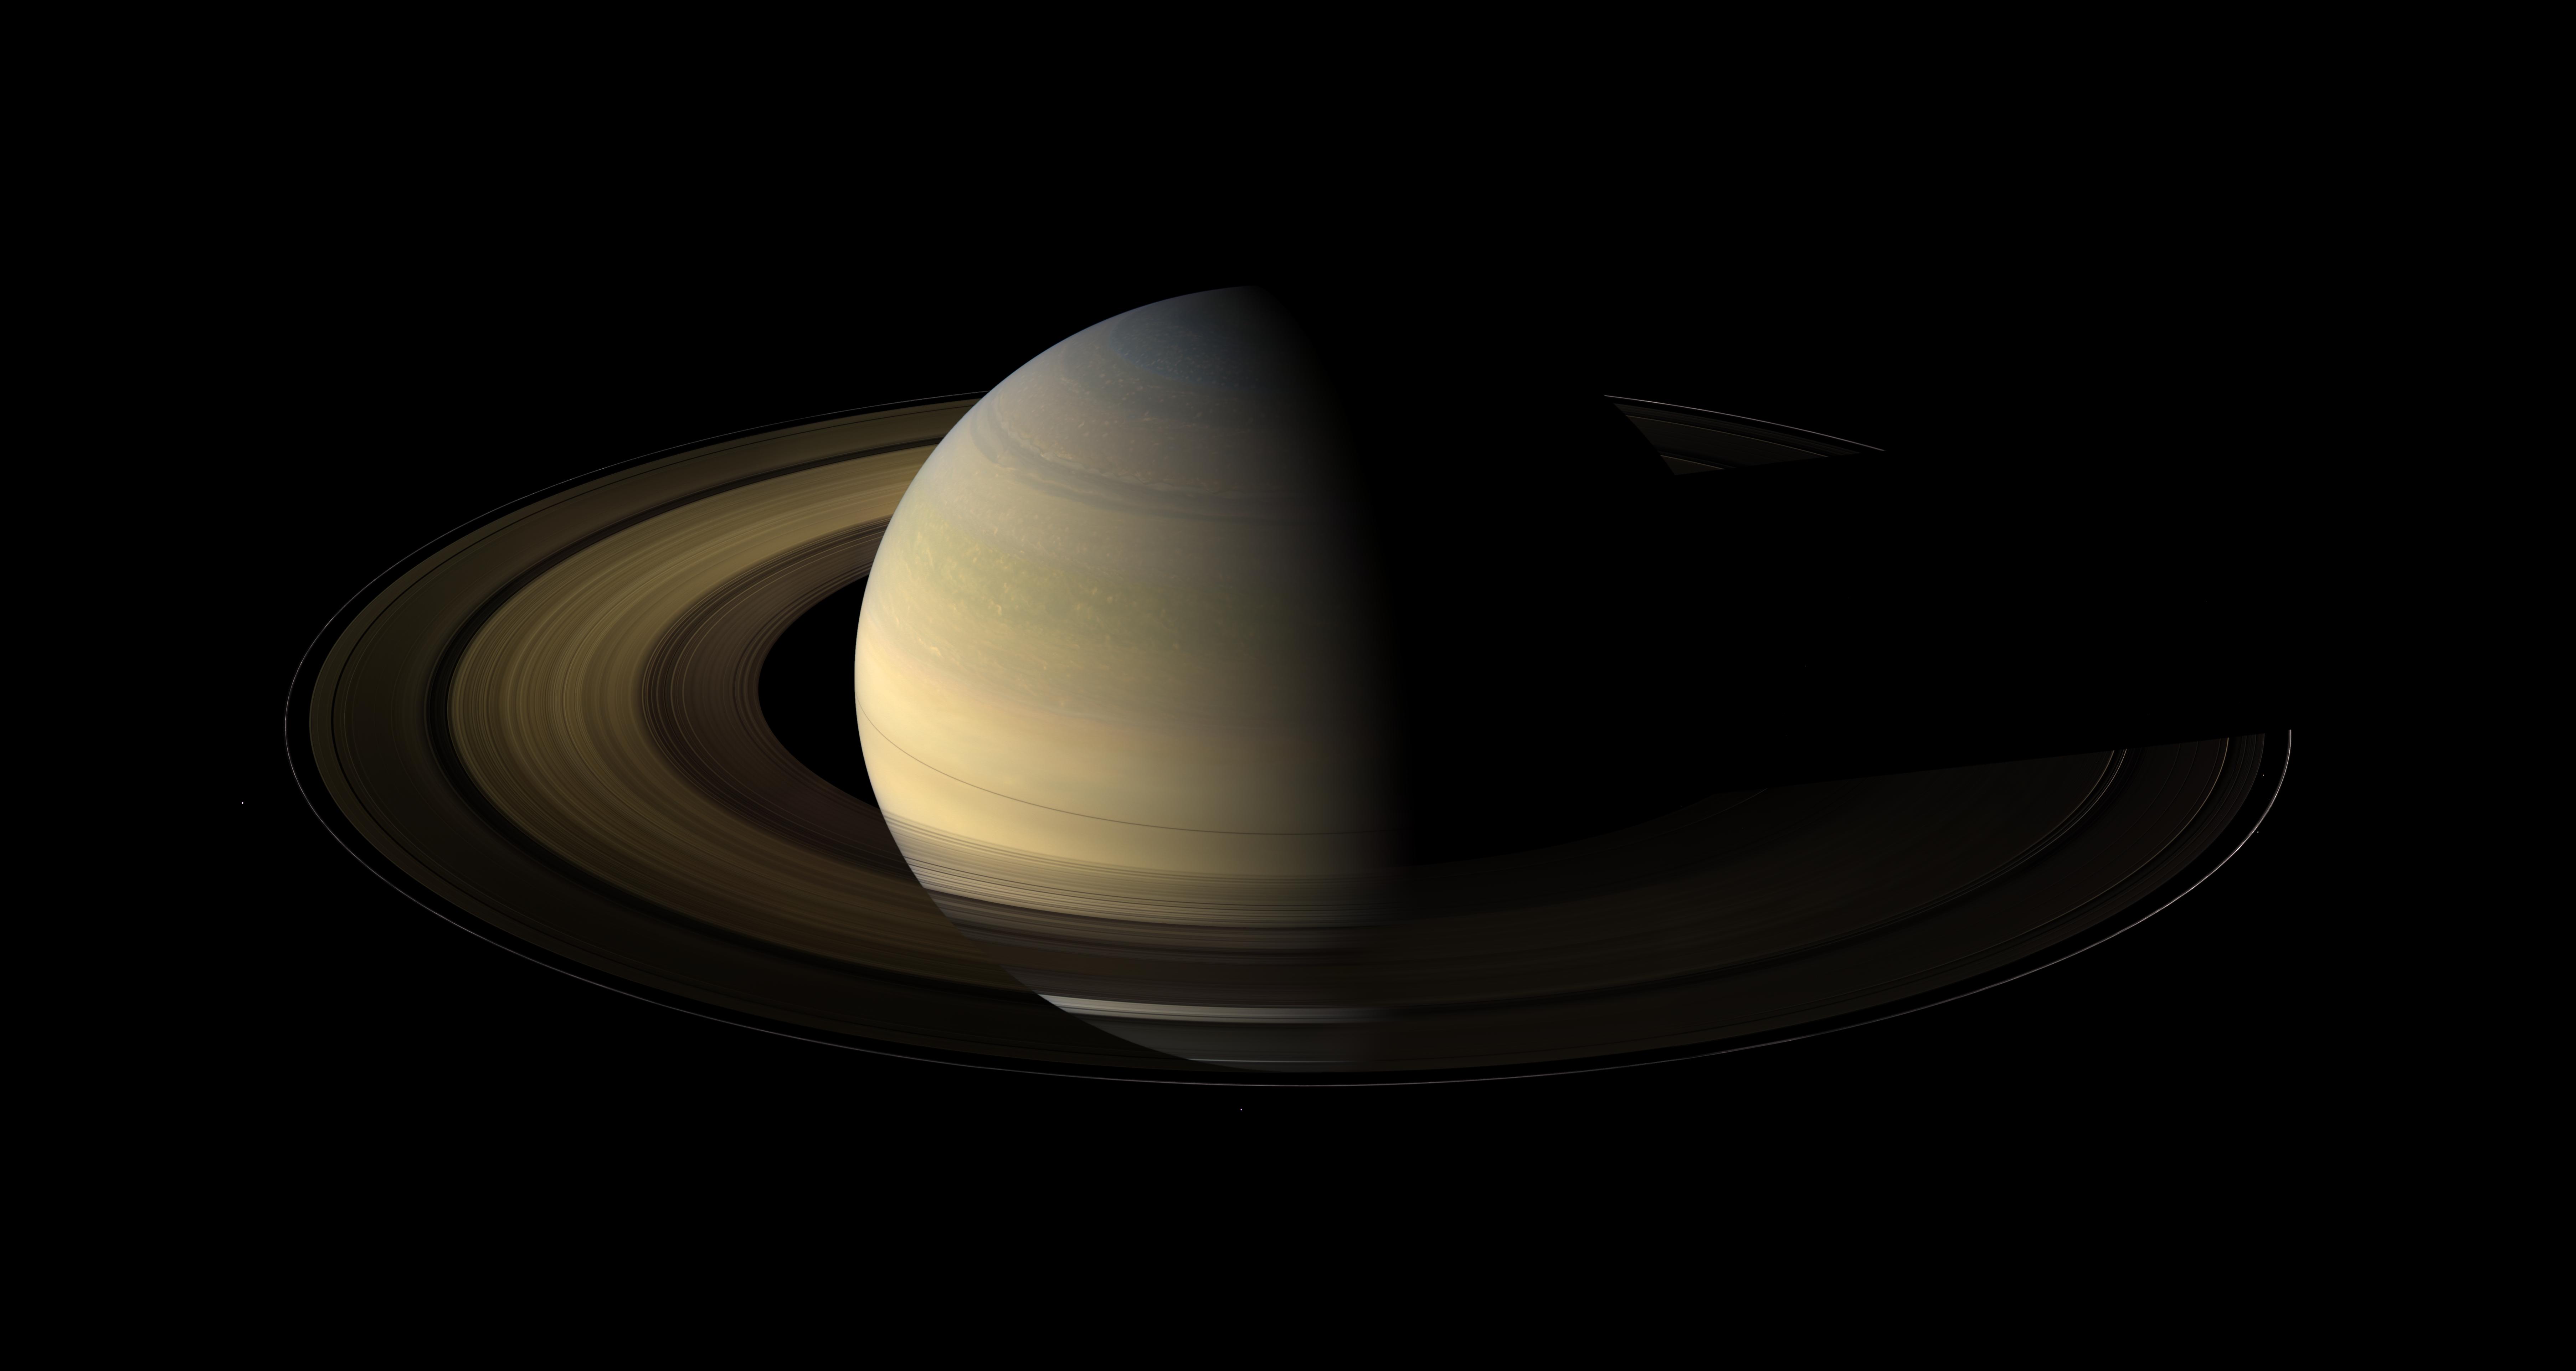 APOD: 2009 September 30 - Saturn at Equinox